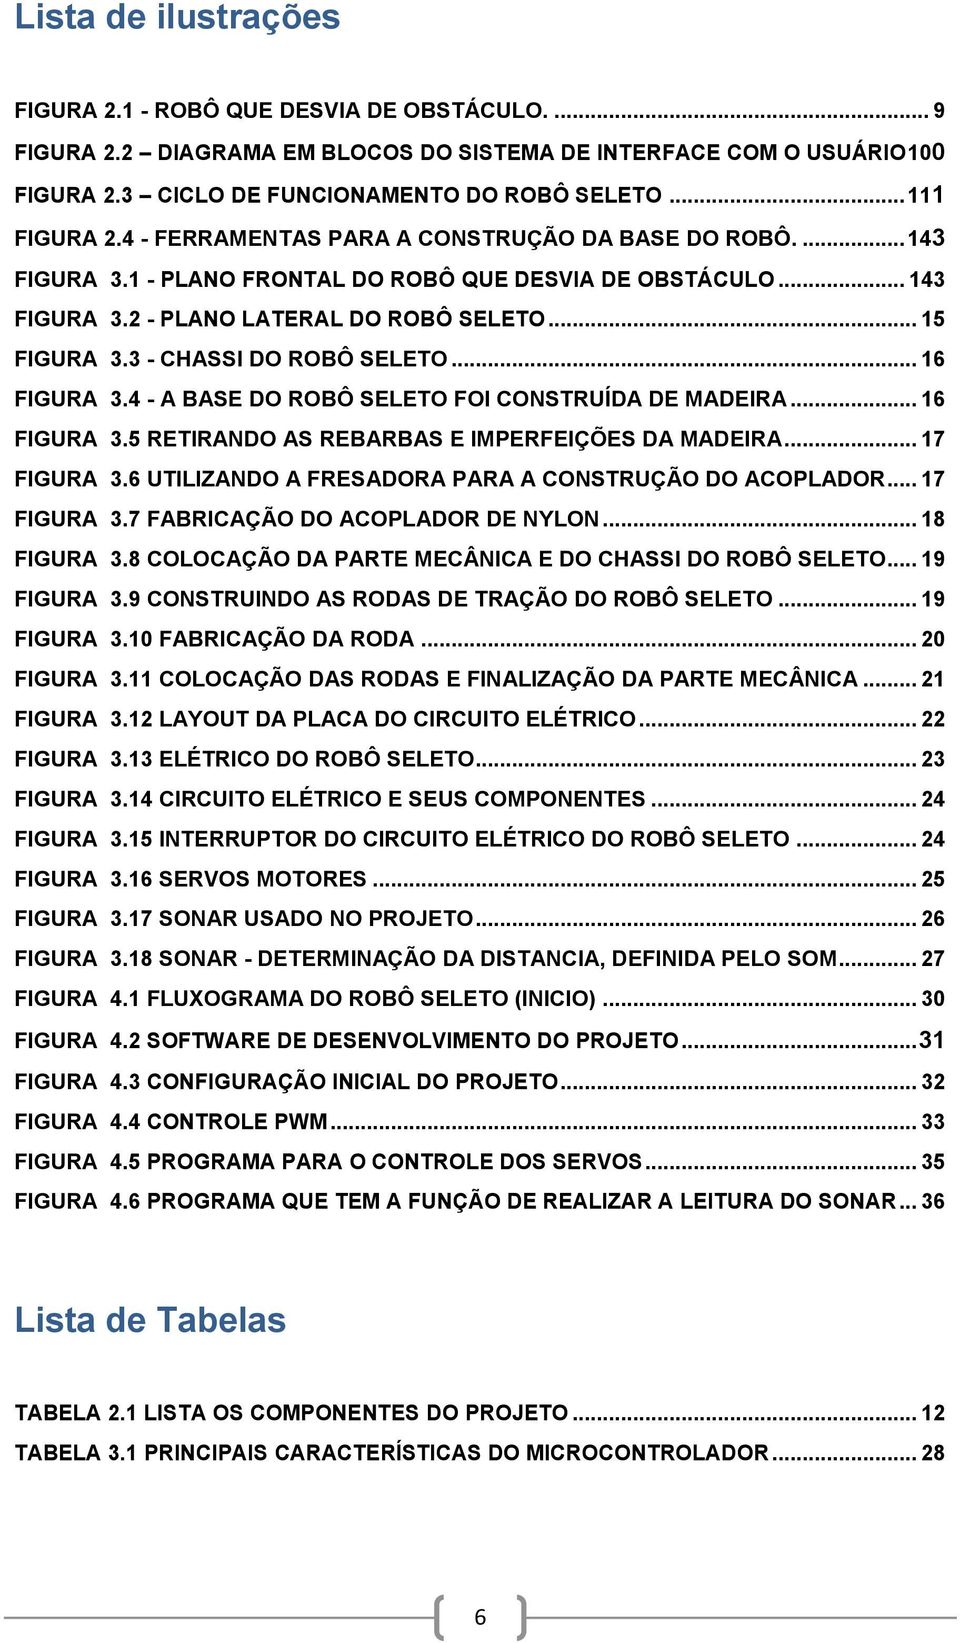 3 - CHASSI DO ROBÔ SELETO... 16 FIGURA 3.4 - A BASE DO ROBÔ SELETO FOI CONSTRUÍDA DE MADEIRA... 16 FIGURA 3.5 RETIRANDO AS REBARBAS E IMPERFEIÇÕES DA MADEIRA... 17 FIGURA 3.